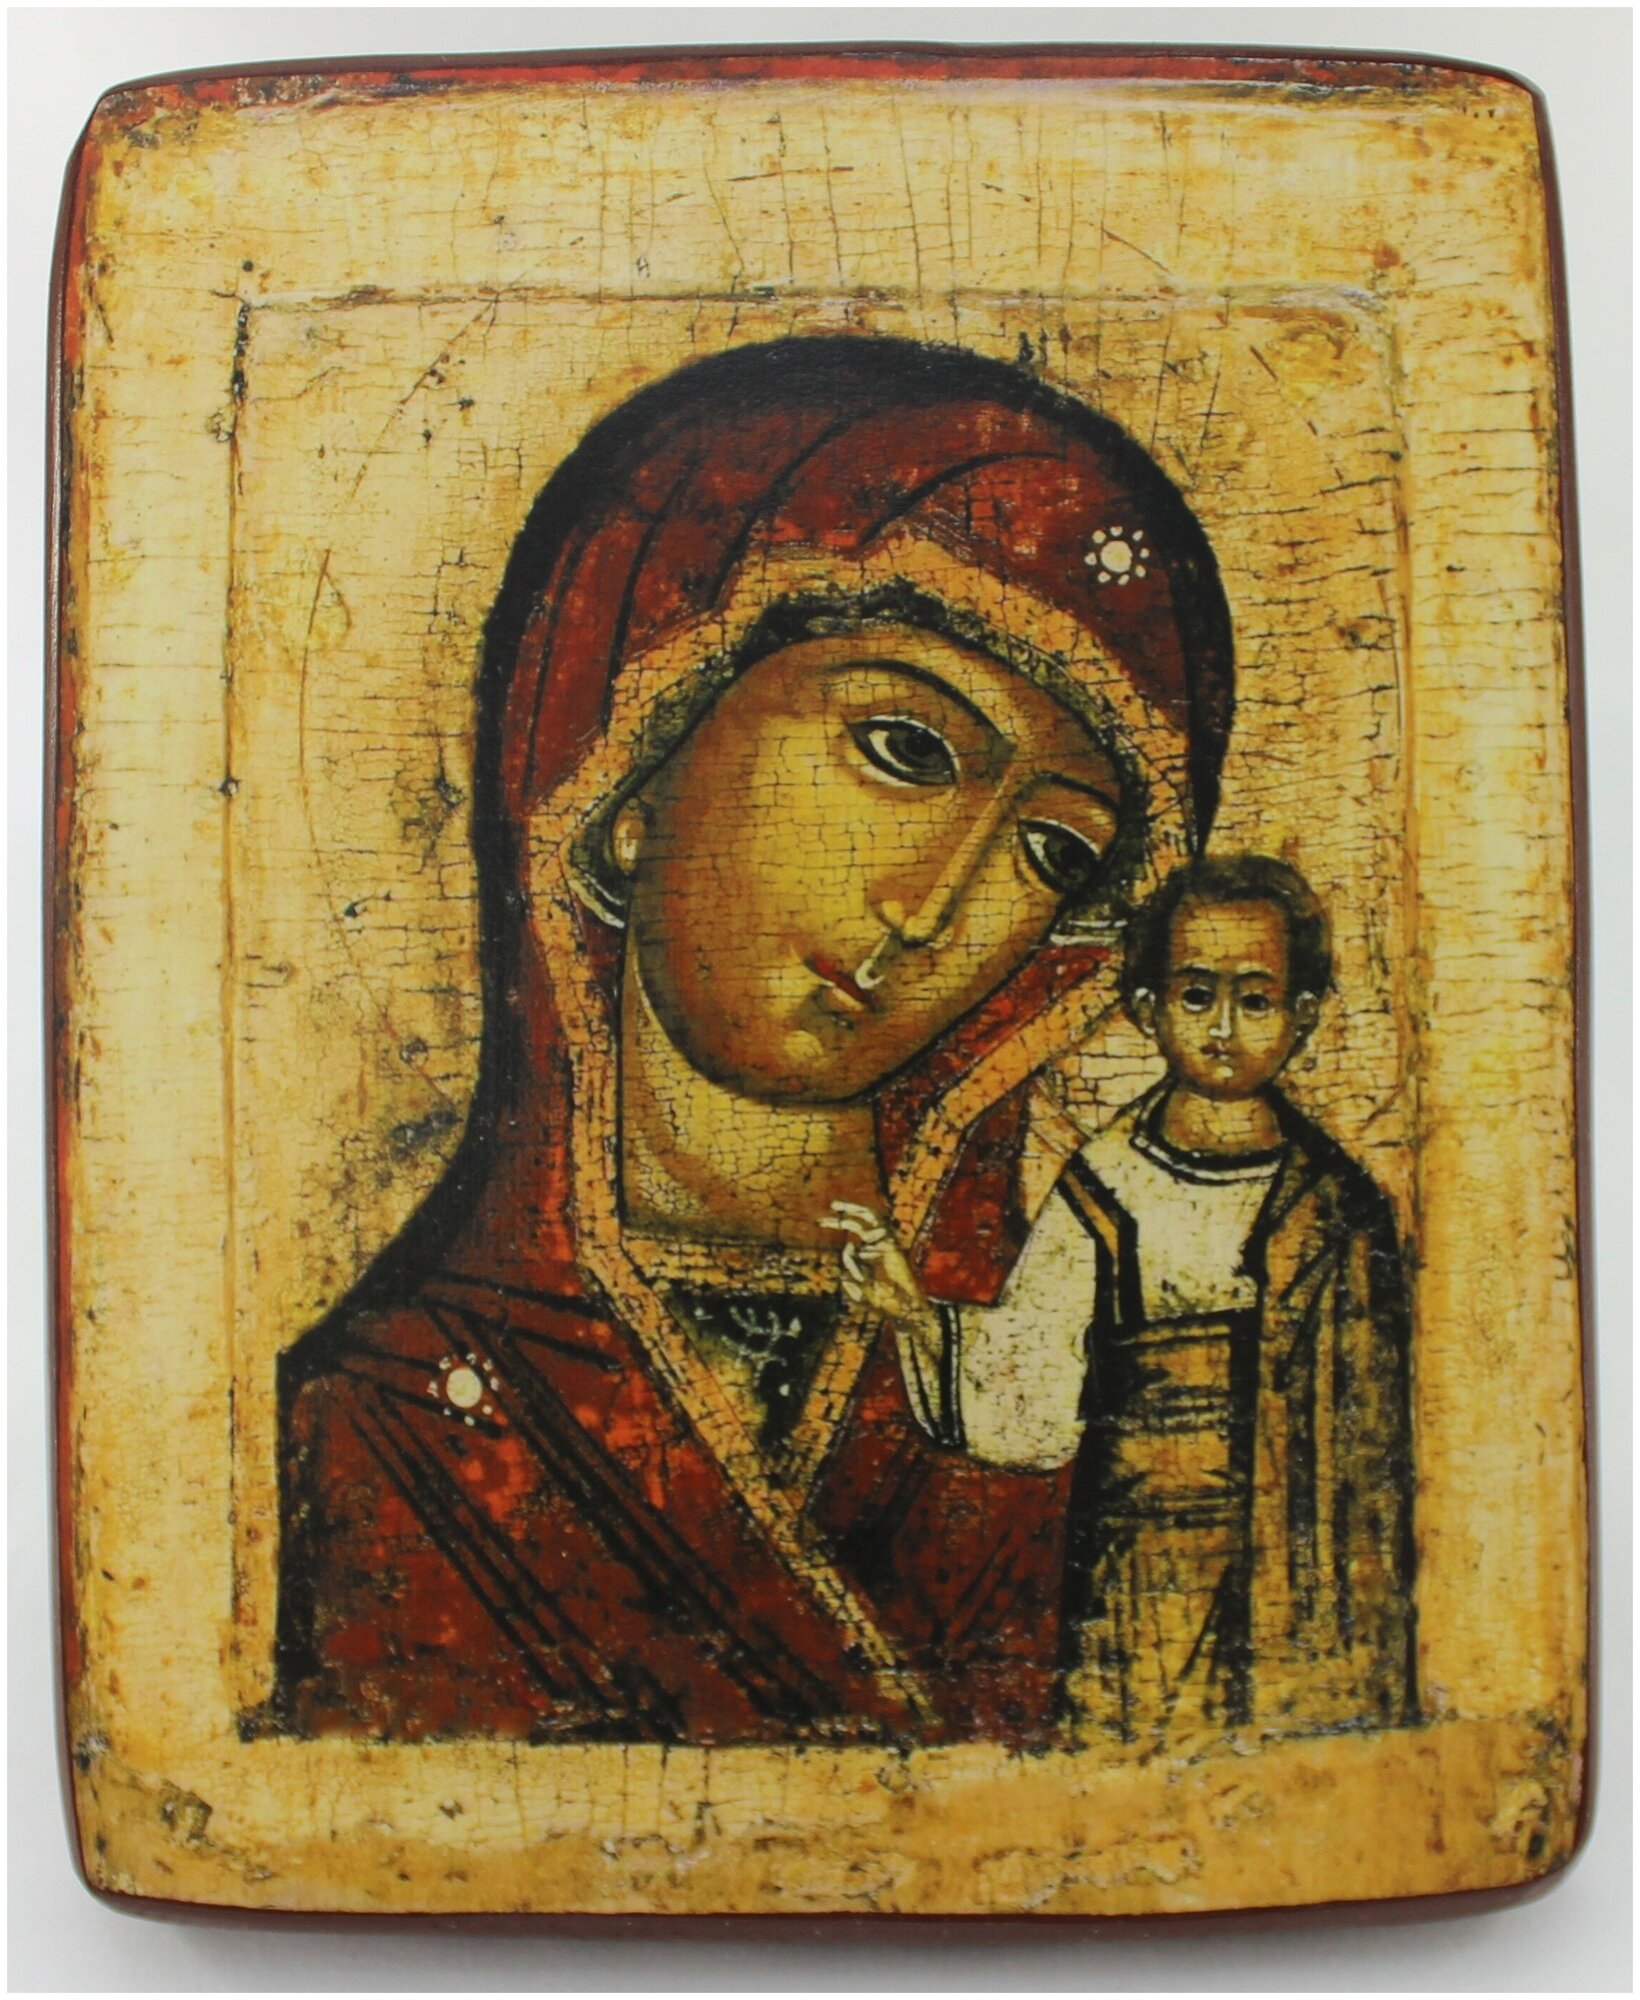 Православная Икона Божией Матери Казанская, деревянная иконная доска, левкас, ручная работа (Art.1084М)